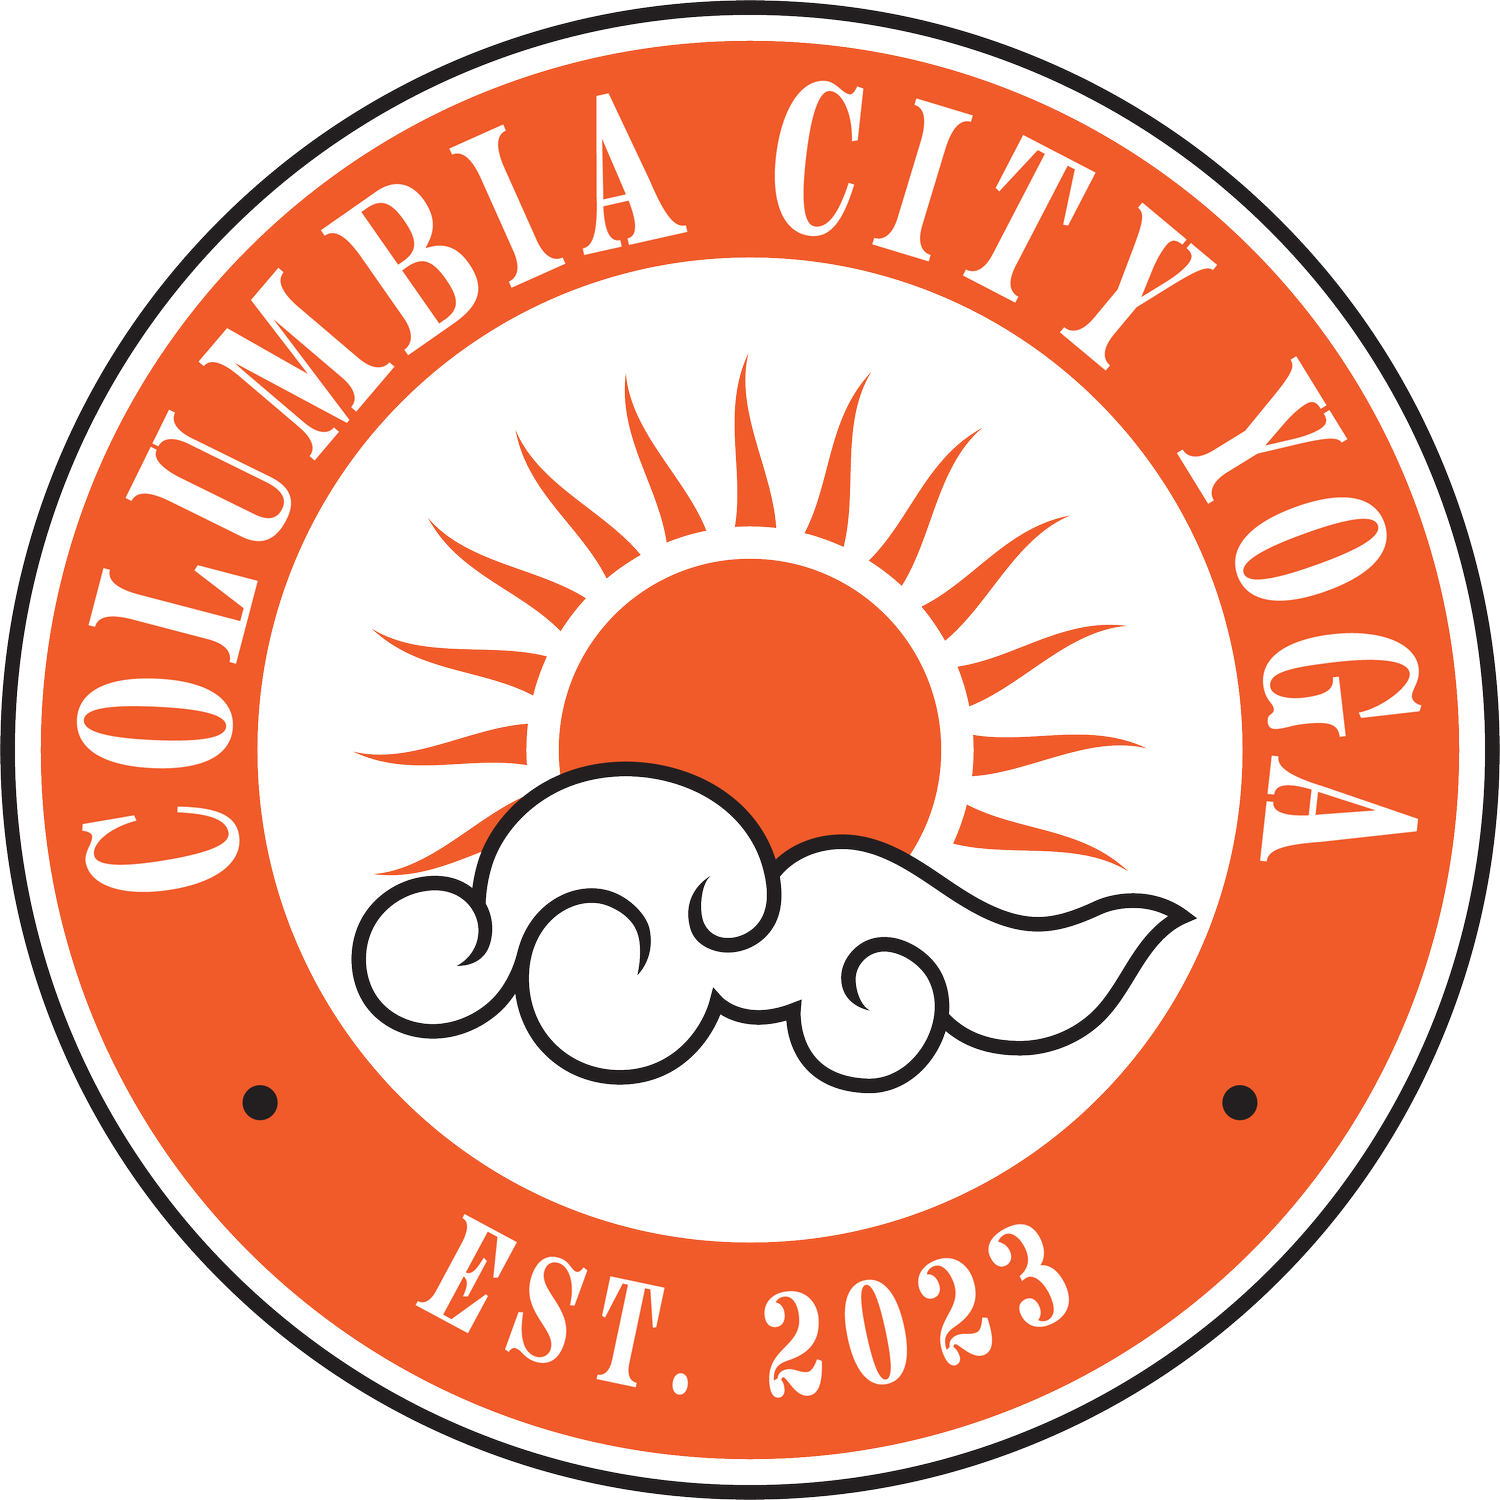 Columbia City Yoga